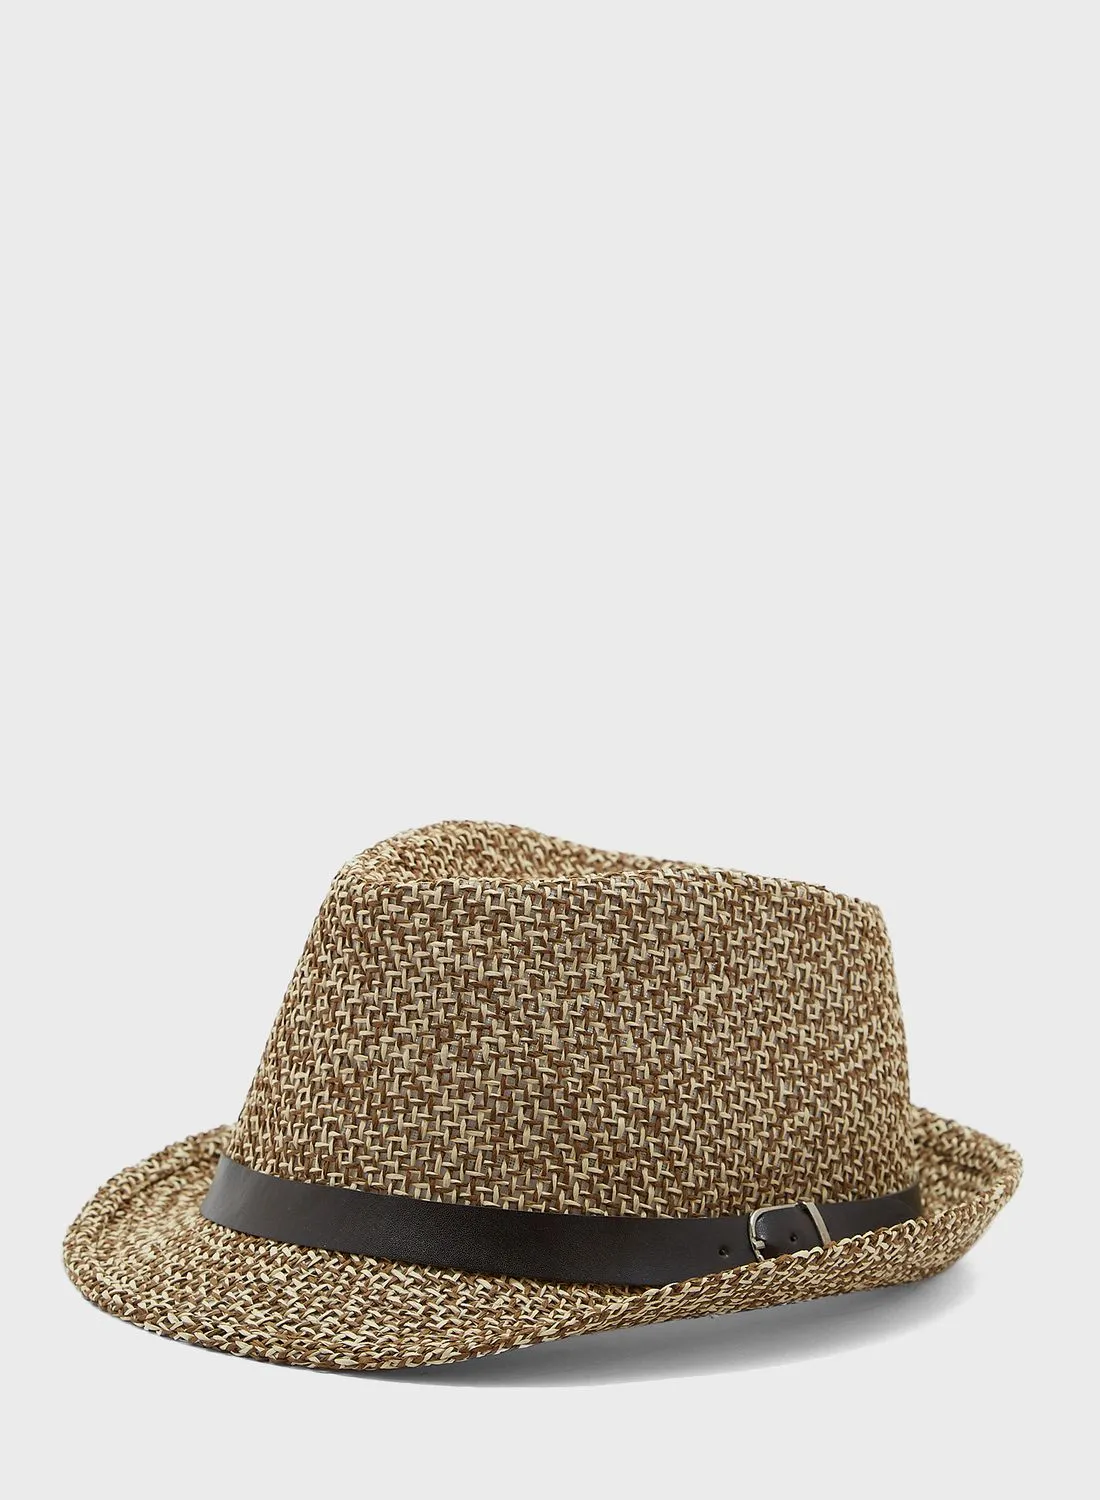 قبعة فيدورا مزينة بسوار من الخشب